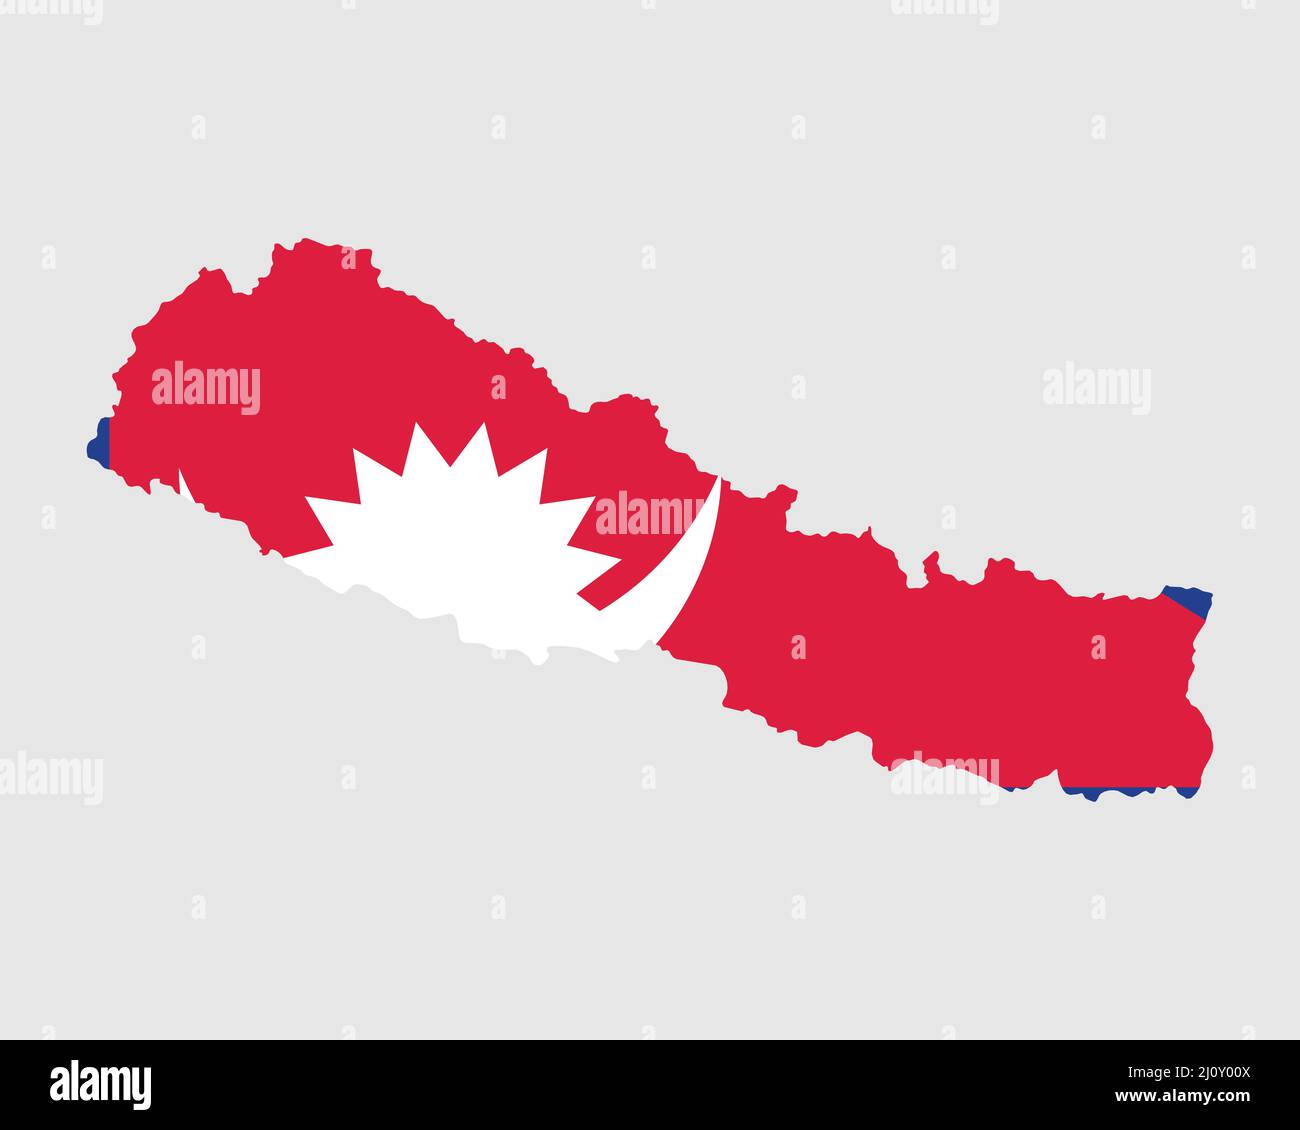 Nepal Flag Map. Carta della Repubblica Federale Democratica del Nepal con la bandiera del Paese Nepalese. Illustrazione vettoriale. Illustrazione Vettoriale